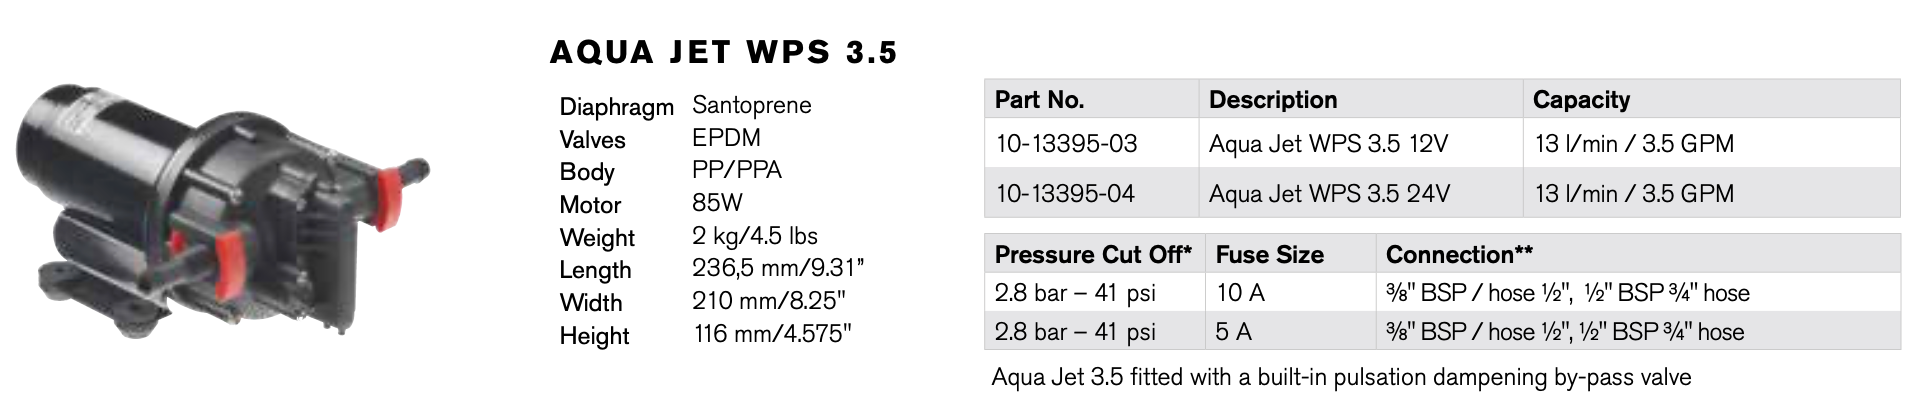 JOHNSON Aqua Jet WPS 3.5 (12V or 24V)